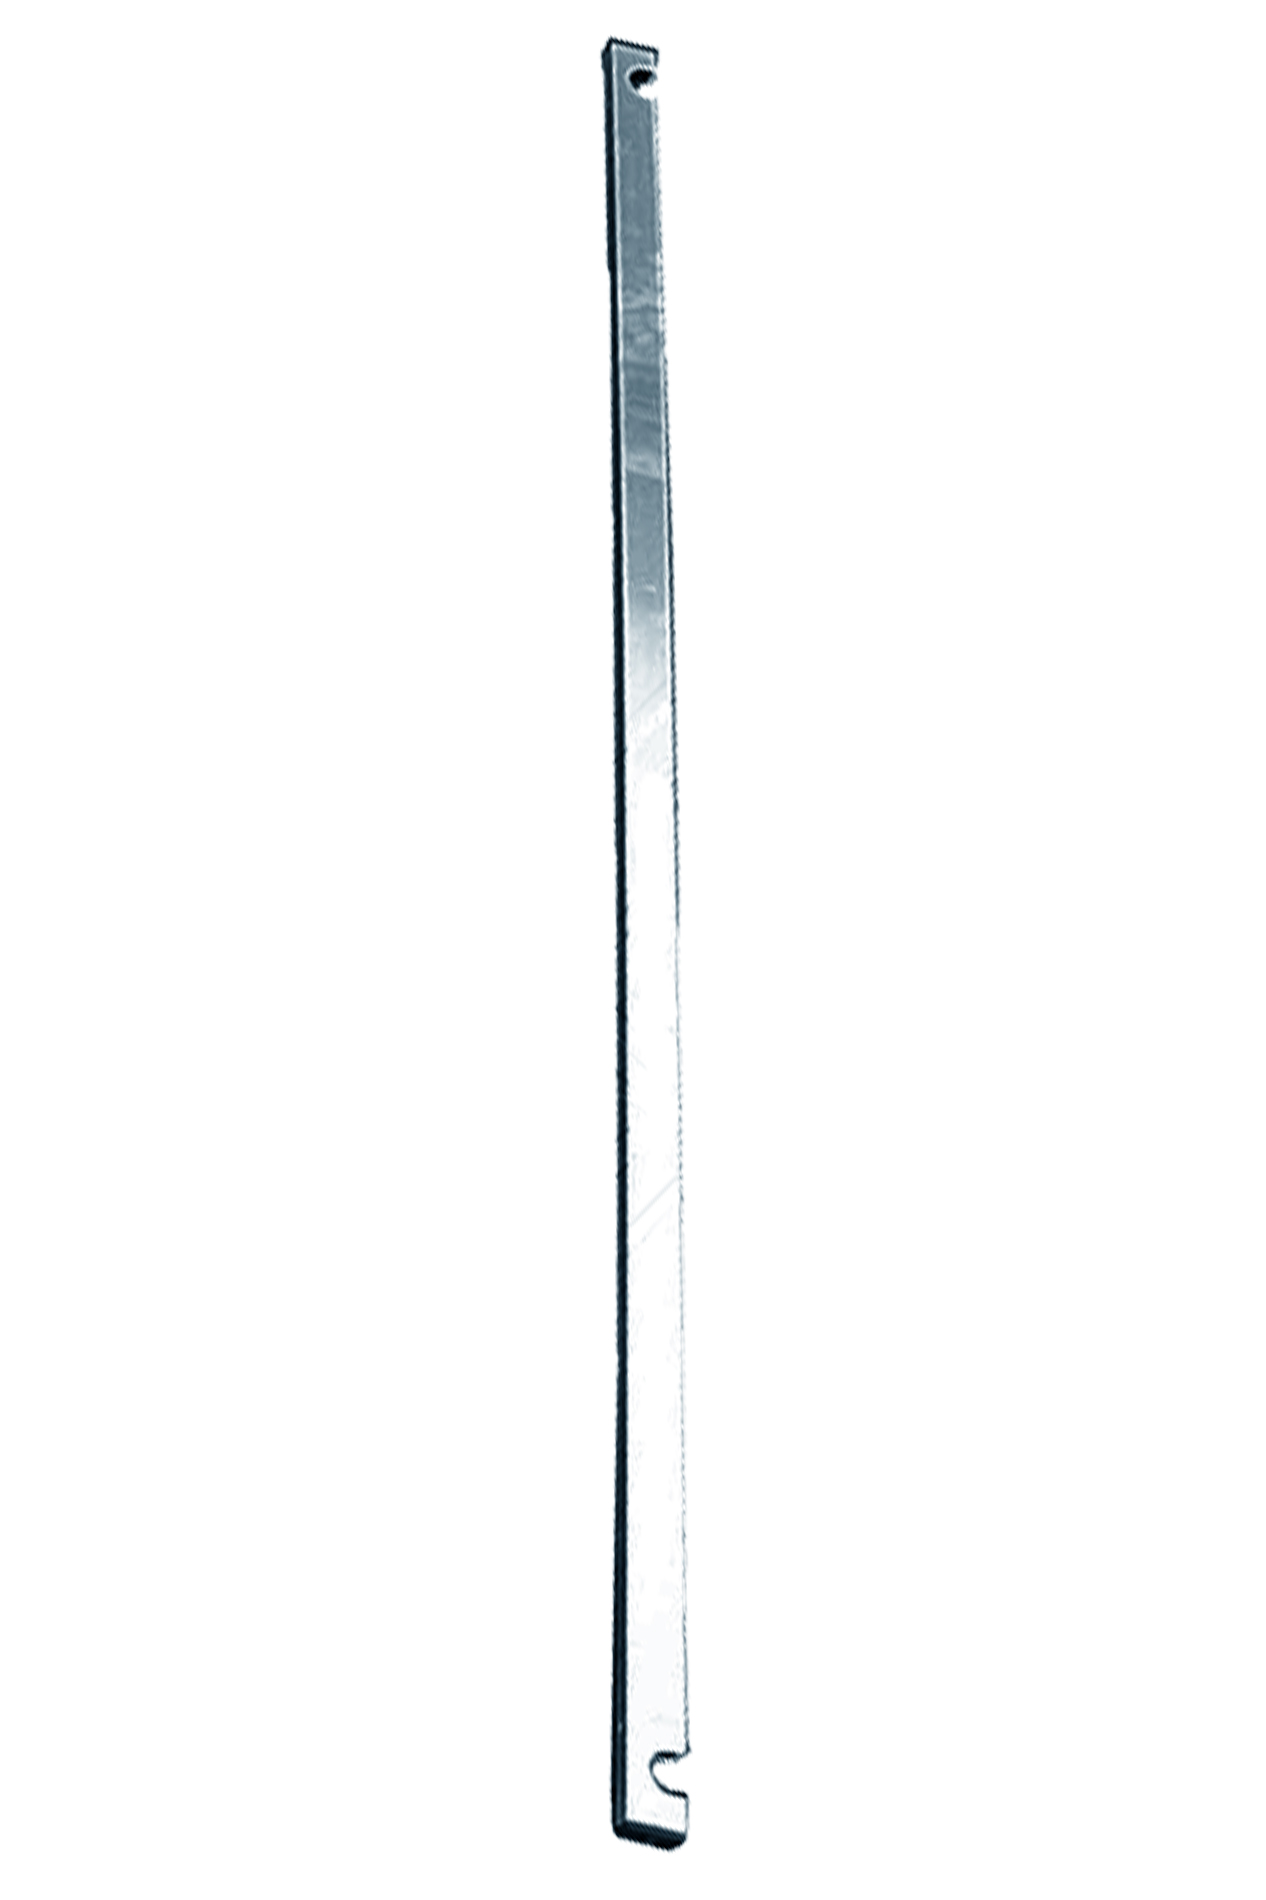 Дополнительное изображение Stabilo серии 5500 рабочая высота 10,4 м, размер площадки (2x1.5 м)